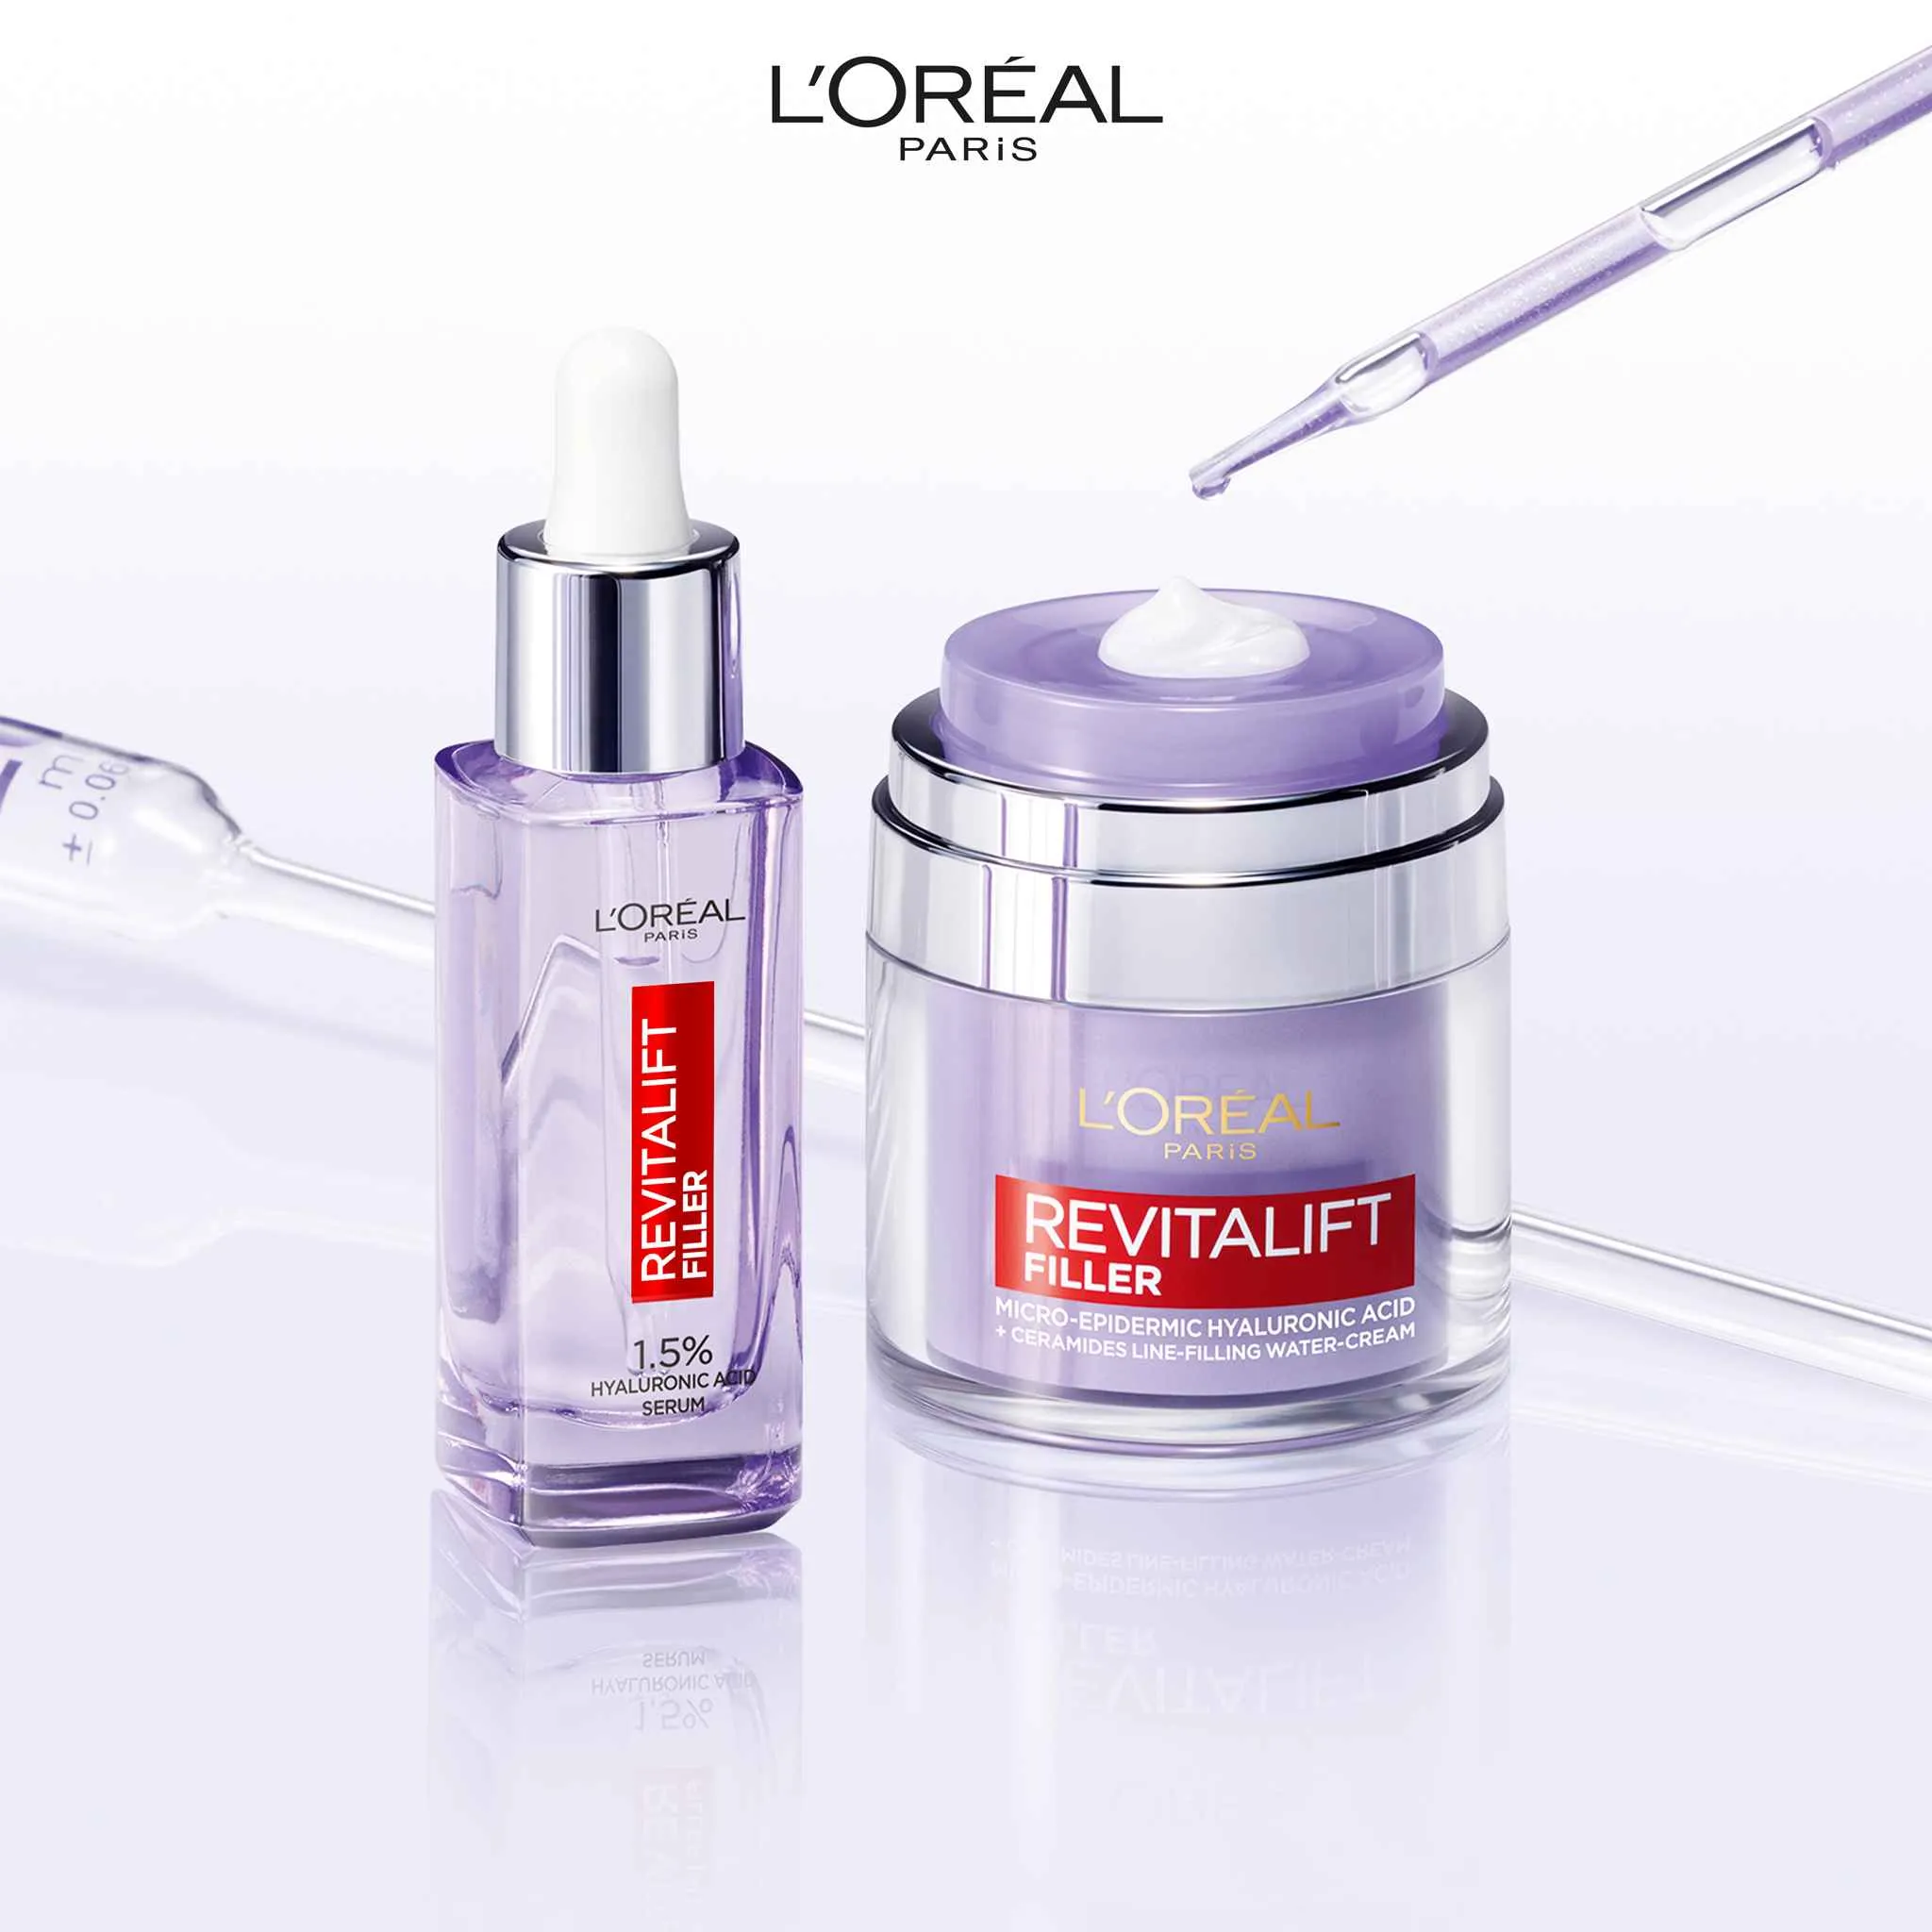 L'Oréal Paris Revitalift Filler Sérum proti vráskam s 1,5% čistej kyseliny hyalurónovej, 30 ml 1×30 ml, sérum proti vráskam